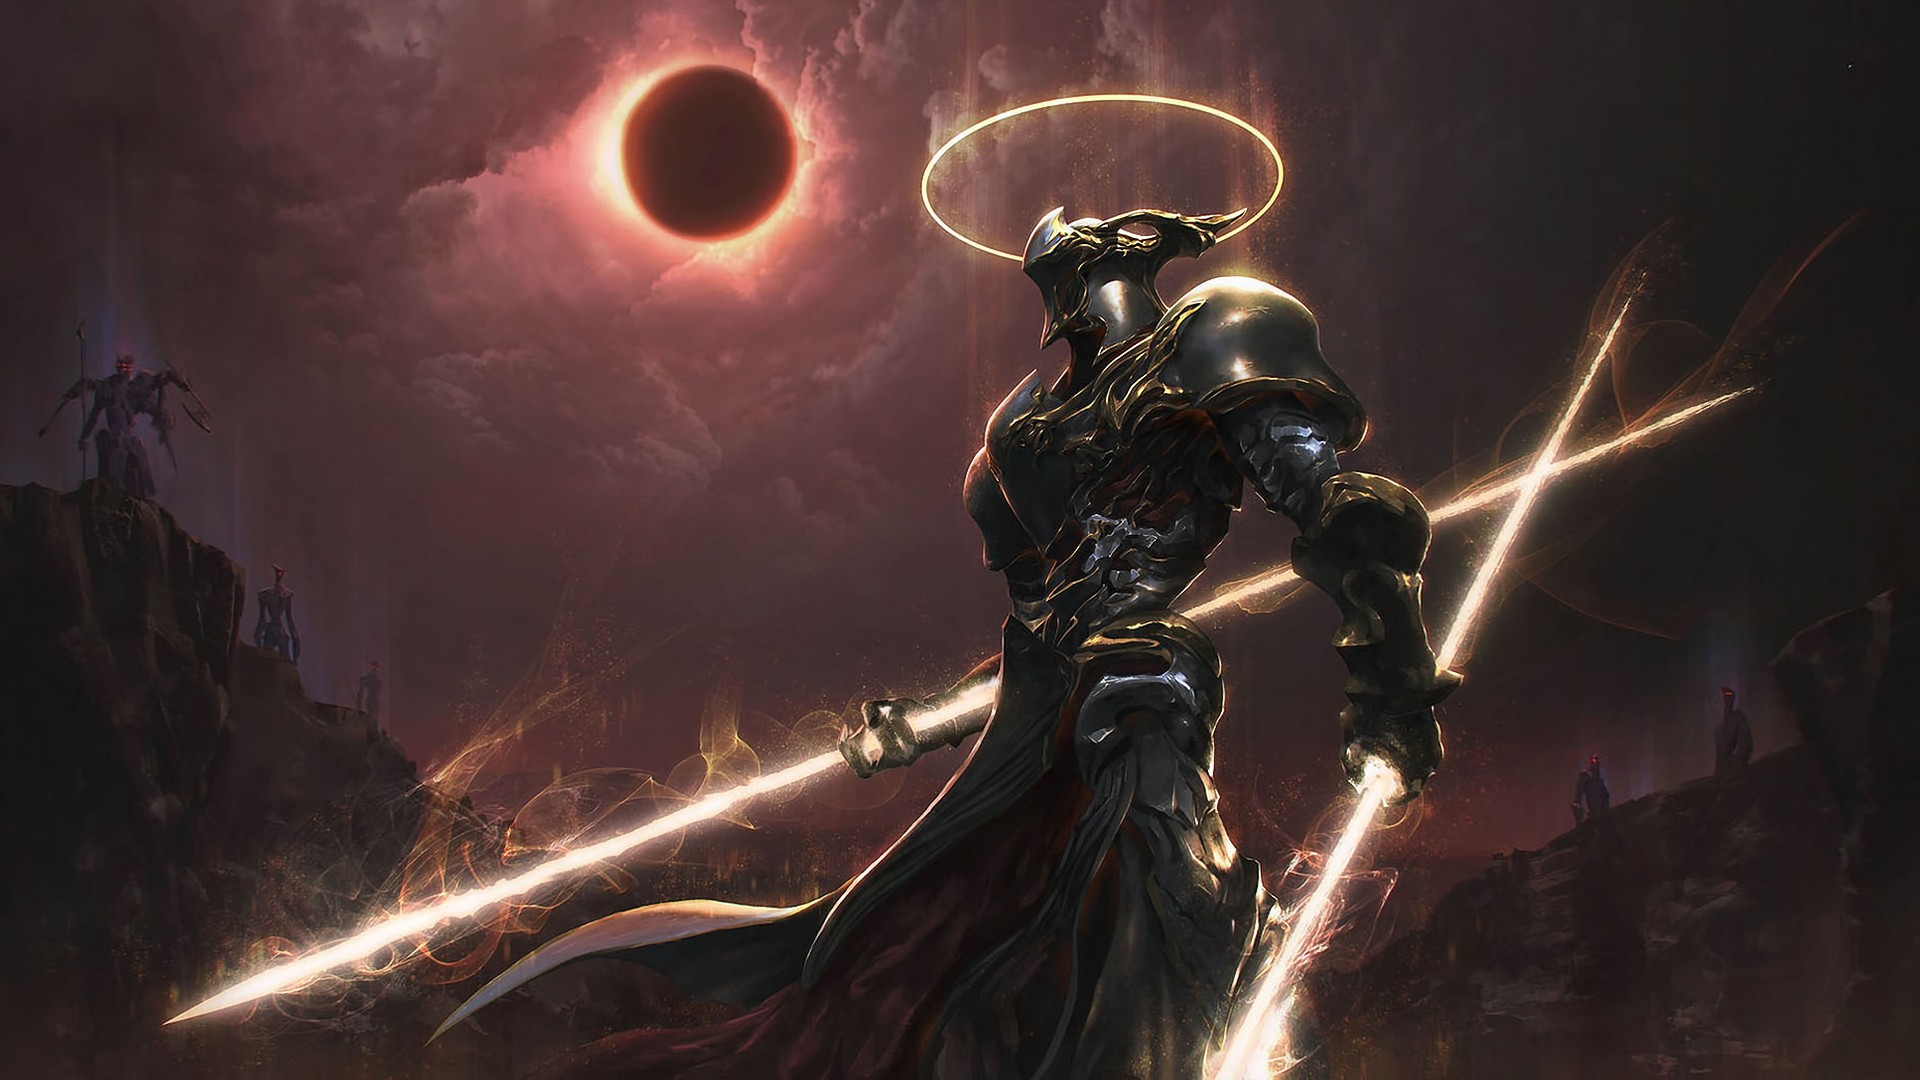 Warrior Artwork Fantasy Art Digital Art Cyborg Solar Eclipse Demon Apocalyptic Knight Fantasy Art 1920x1080